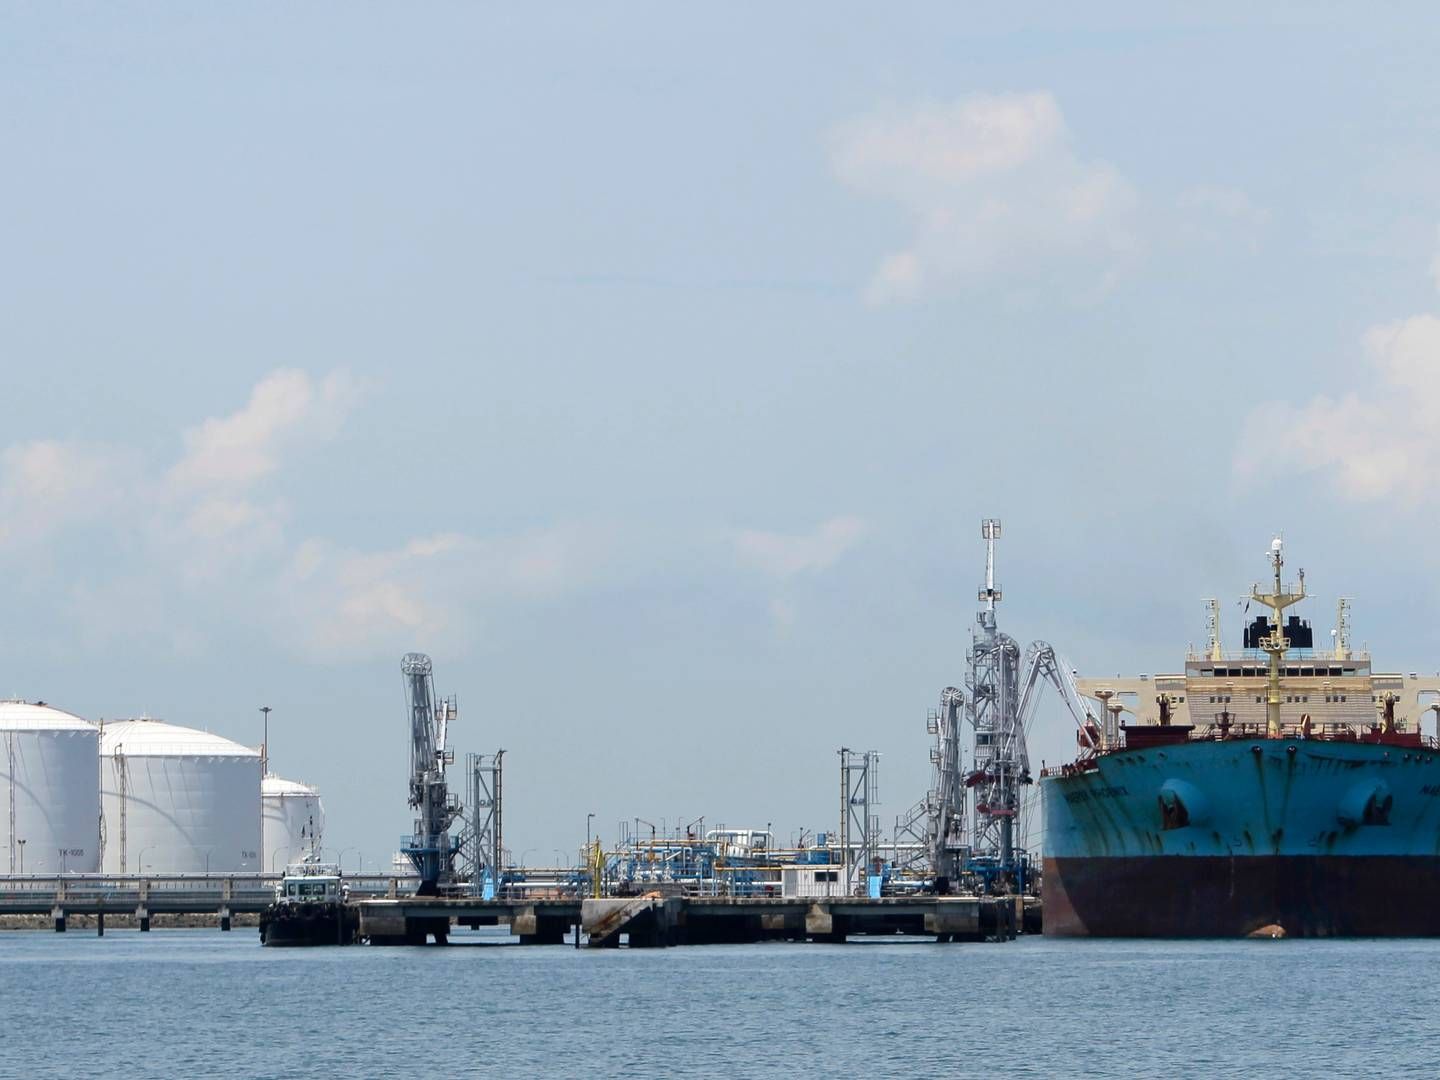 ”Olieefterspørgslen forventes at vokse hurtigst i Asien og Stillehavsområdet (med 4,7 pct. i løbet af de næste to år ifølge IEA), mens væksten i udbuddet vil være fokuseret på fjerntliggende oliebrønde i USA, Guyana, Brasilien og Canada,” skriver Braemar. | Foto: Tim Chong/Reuters/Ritzau Scanpix